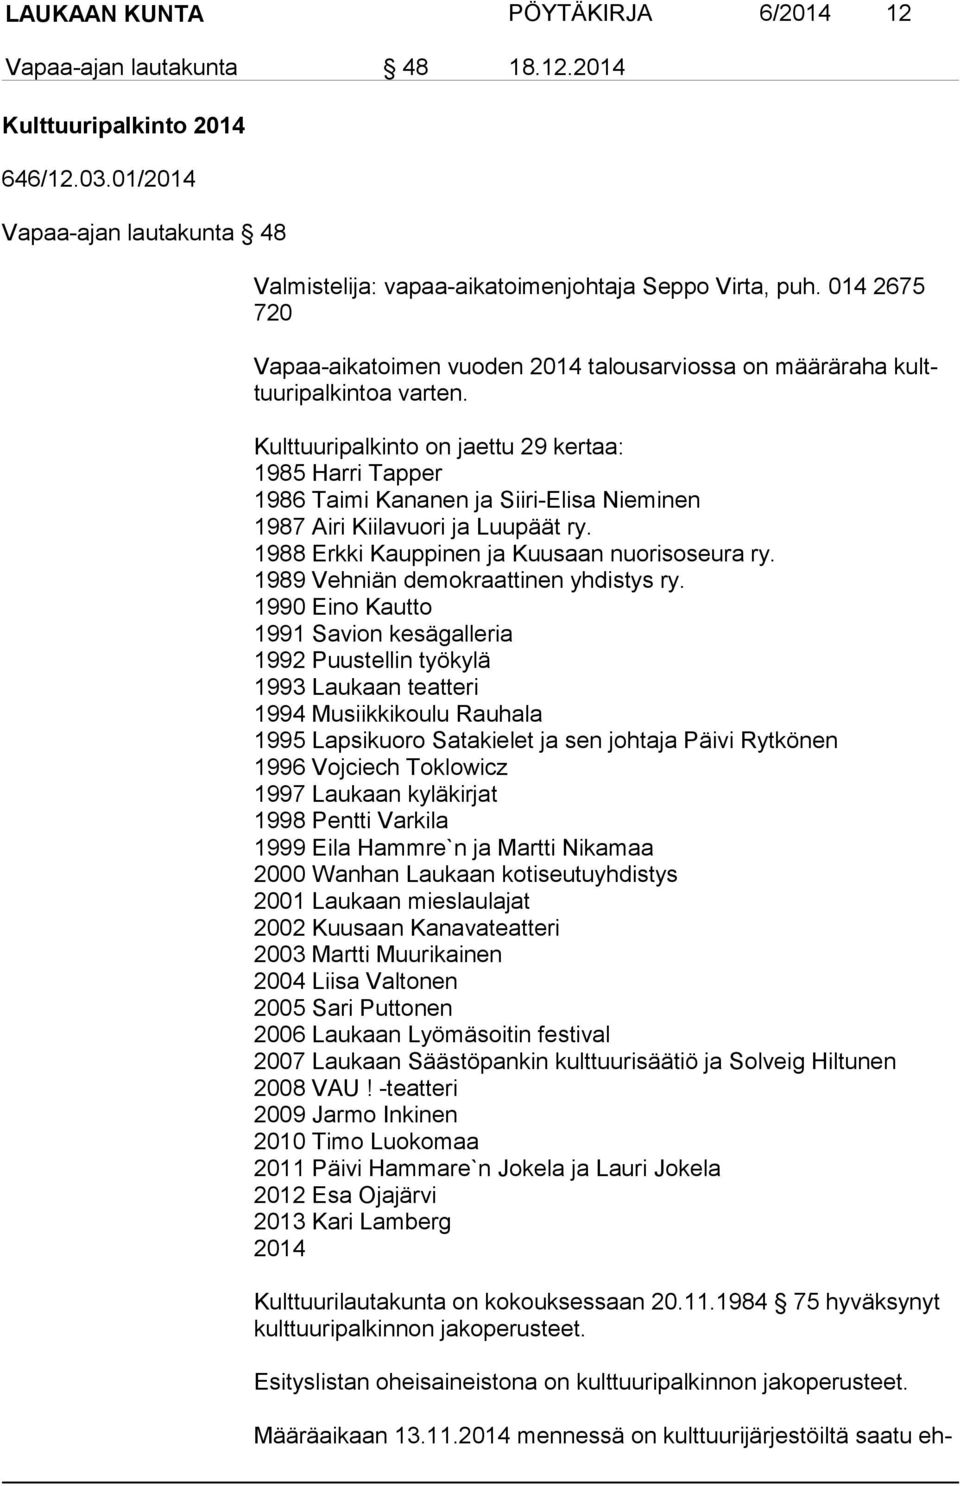 Kulttuuripalkinto on jaettu 29 kertaa: 1985 Harri Tapper 1986 Taimi Kananen ja Siiri-Elisa Nieminen 1987 Airi Kiilavuori ja Luupäät ry. 1988 Erkki Kauppinen ja Kuusaan nuorisoseura ry.